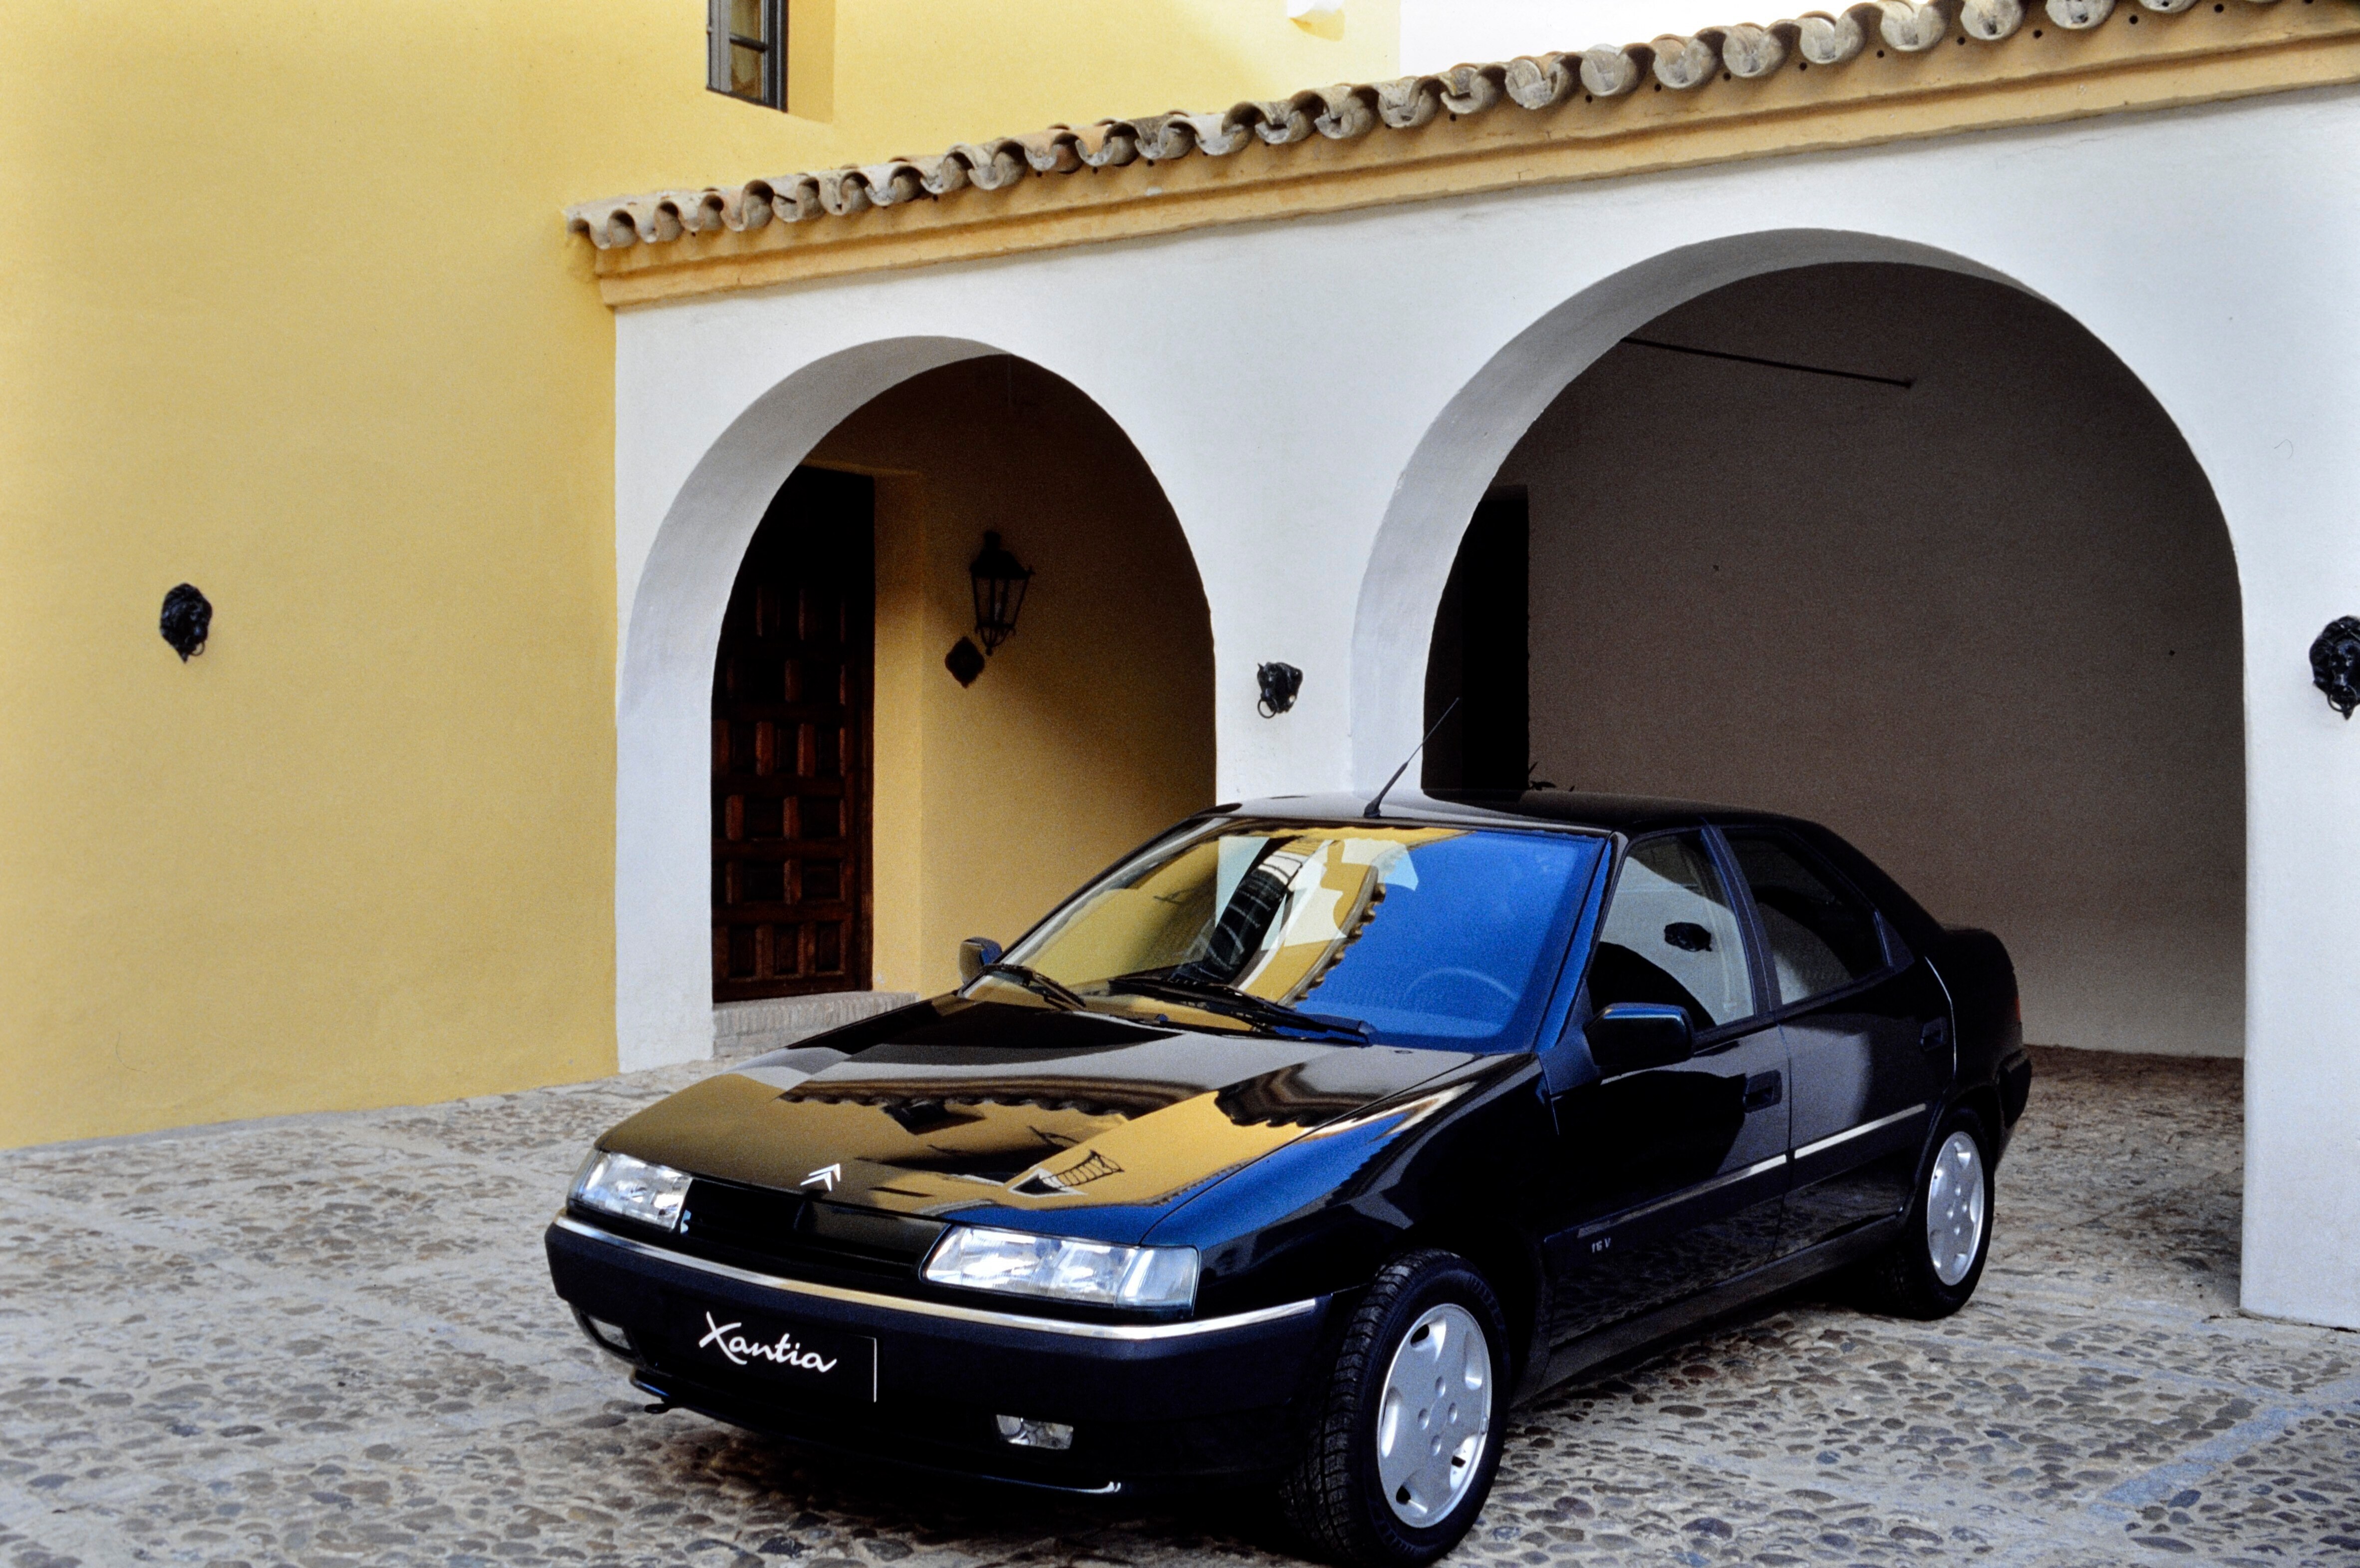 Une Xantia Citroën dans la cour intérieur d'une villa espagnole en février 1993. Photo de Patrick Legros. Utilisation éditoriale uniquement, nous contacter pour toute autre utilisation